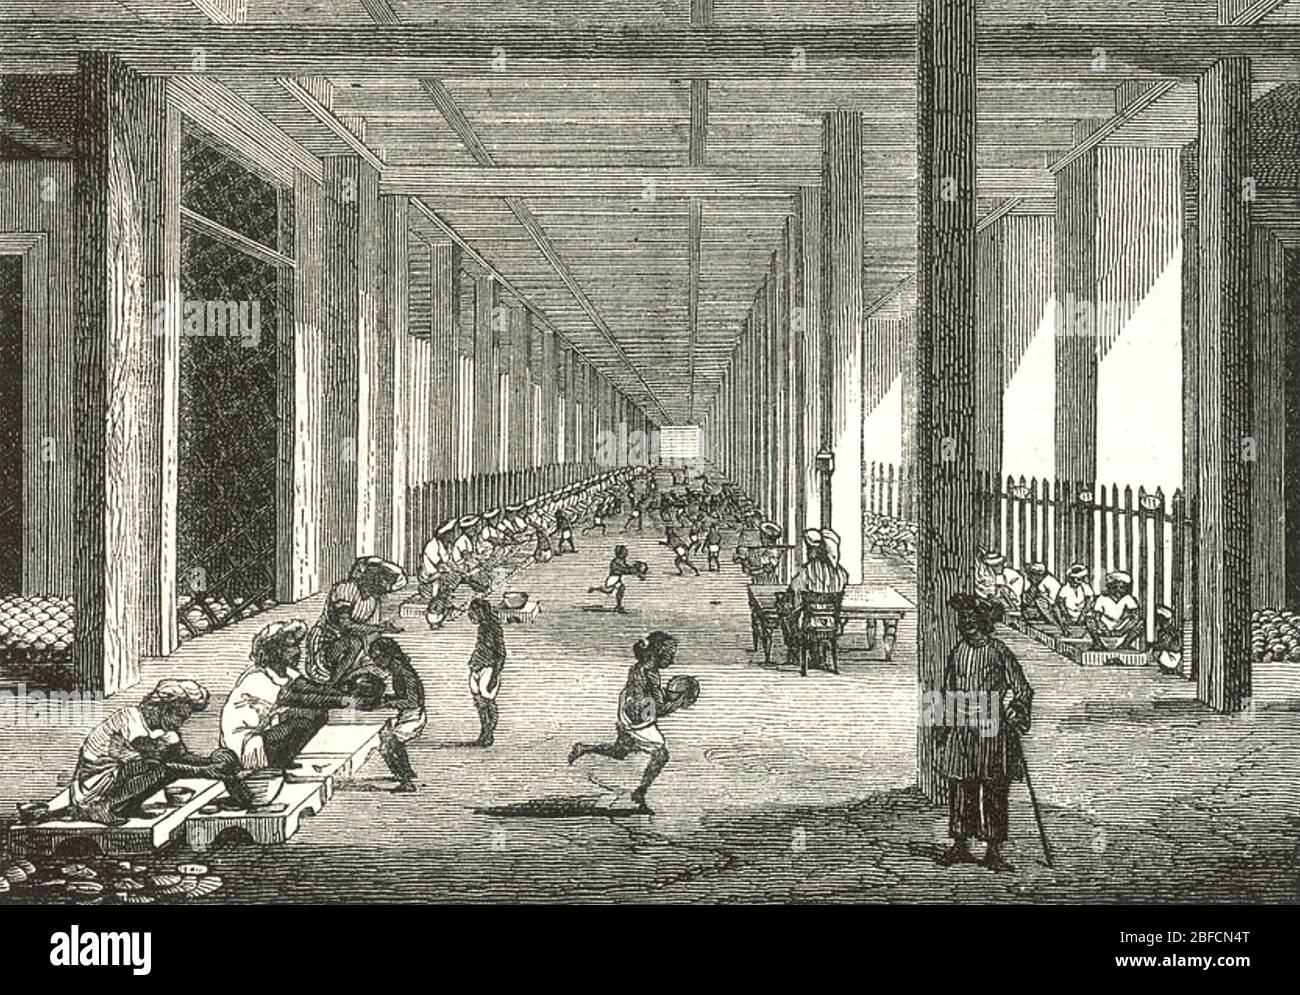 OPIUMFABRIK in Patna, Bengalen, Indien, betrieben von der British East India Company um 1860. Hier im Balling Room wird das rohe Opium vor der Lagerung in Blätter gewickelt. Stockfoto